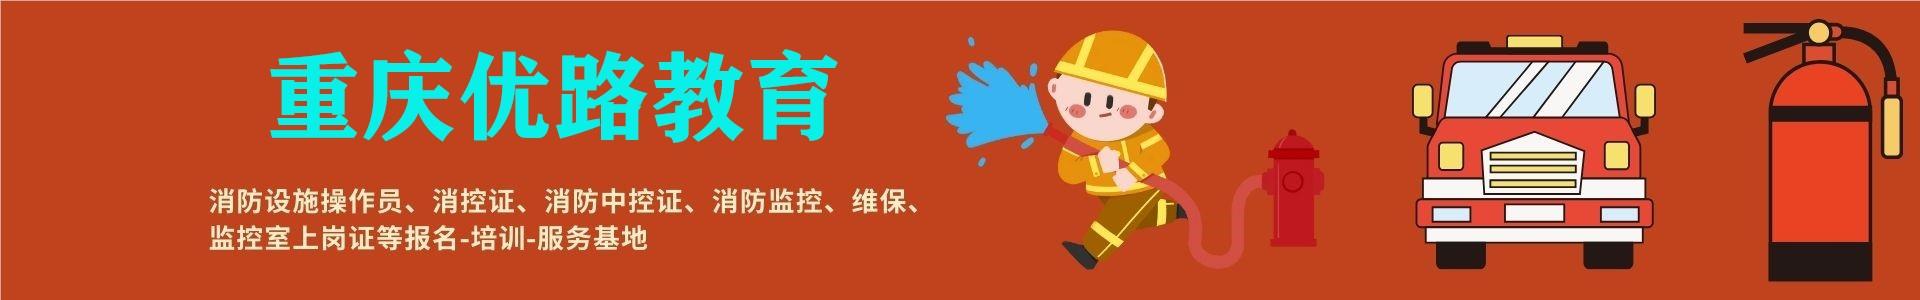 重庆消防设施操作员培训首页